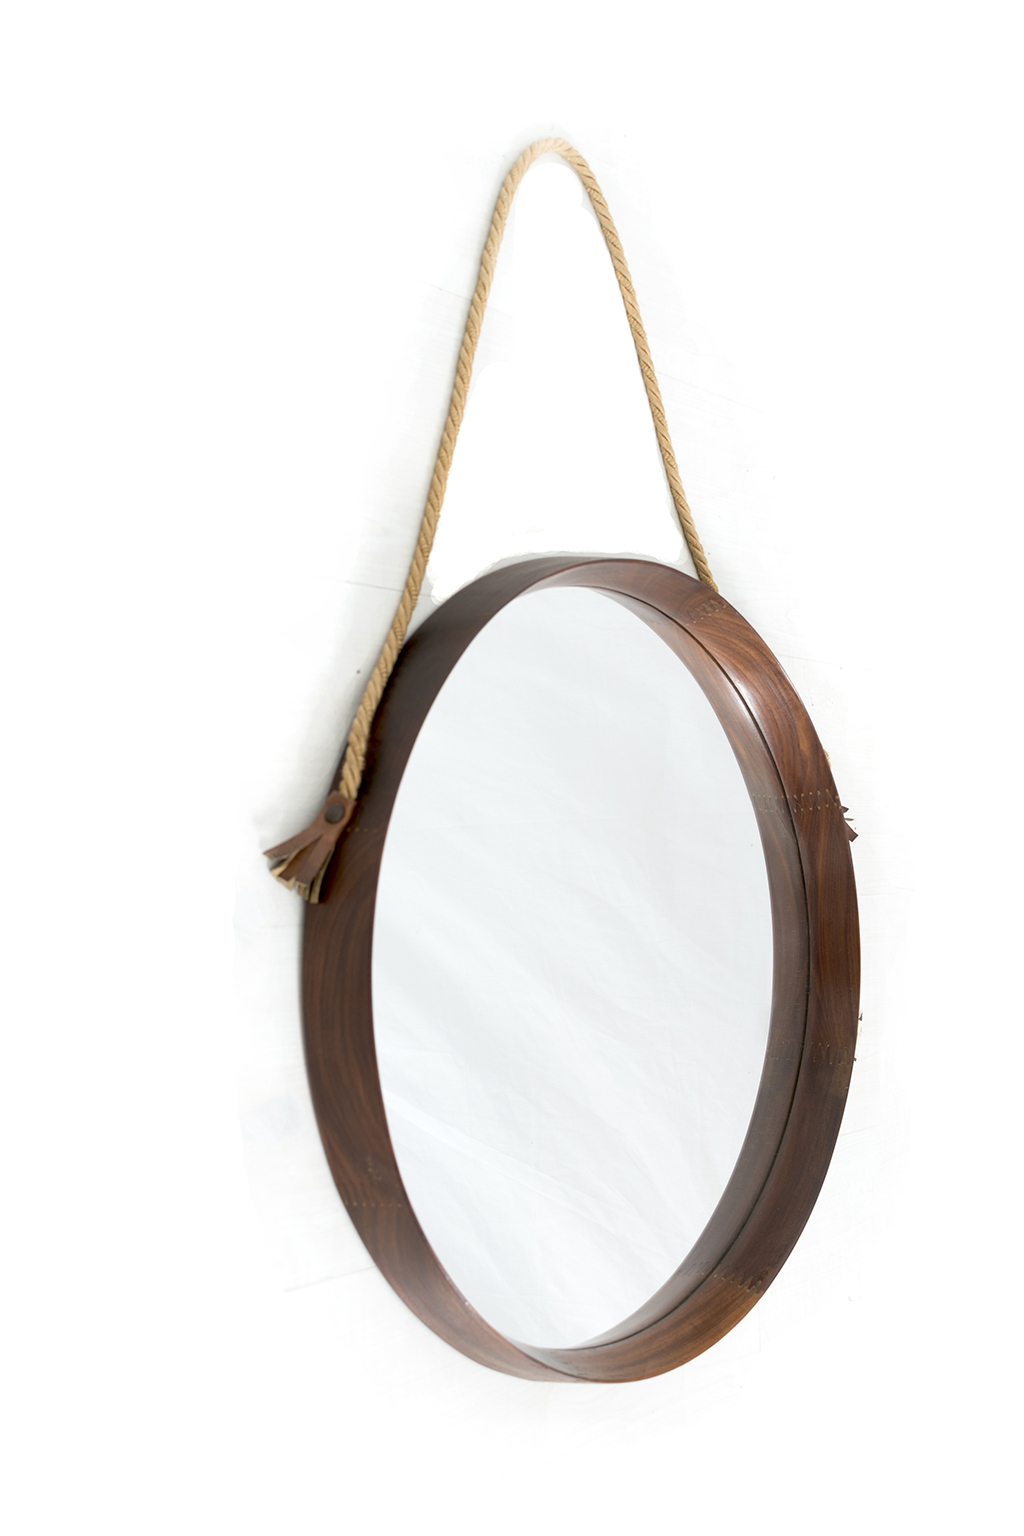 Round mirror with teak frame